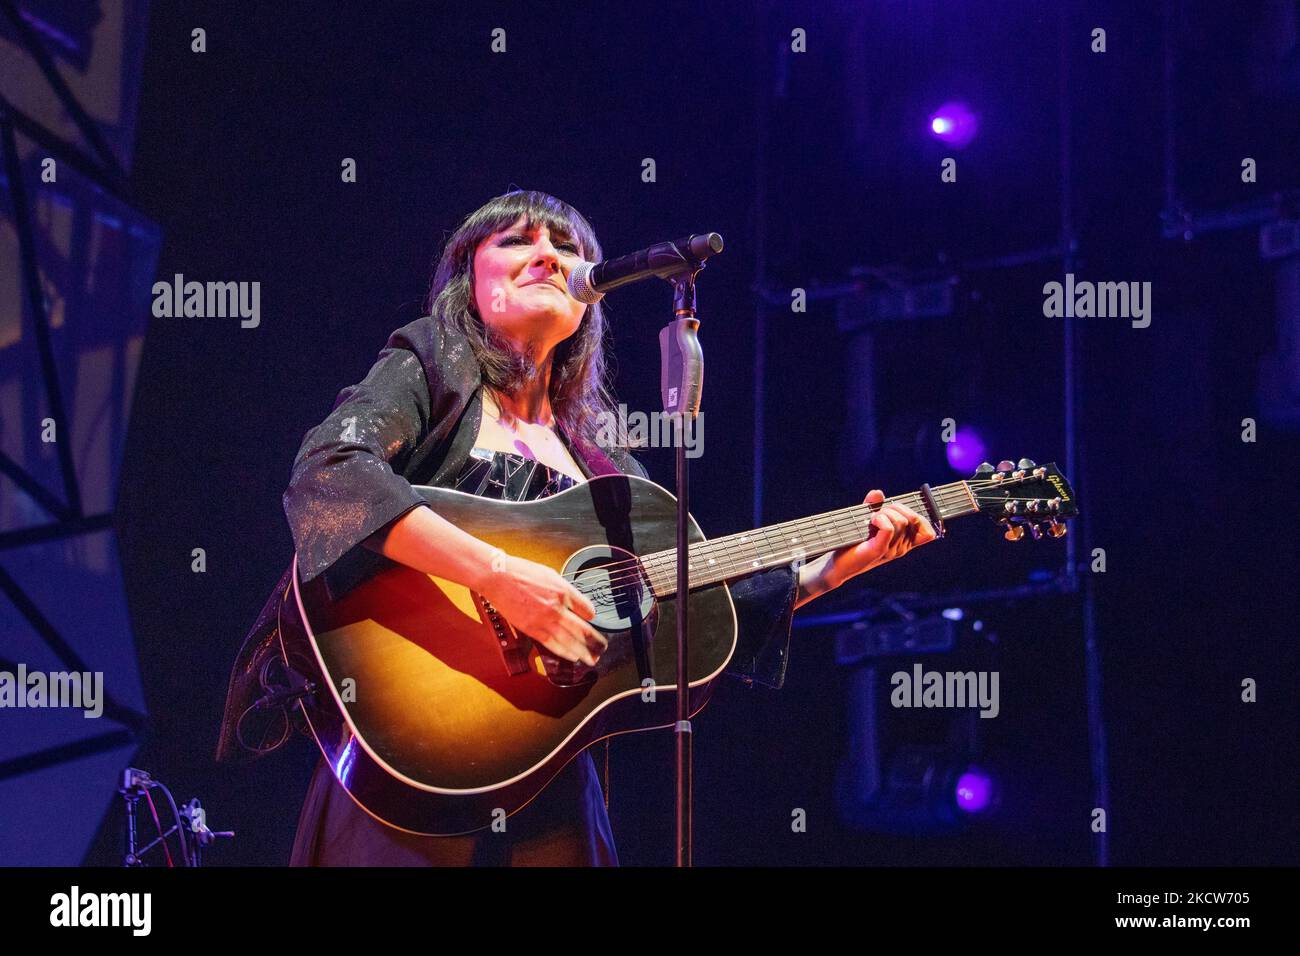 La chanteuse Eva Amaral lors d'un concert Amaral au centre WiZink de Madrid. Le concert fait partie de la tournée de leur nouvel album: 'alto al Color'. (Photo d'Alvaro Laguna/NurPhoto) Banque D'Images